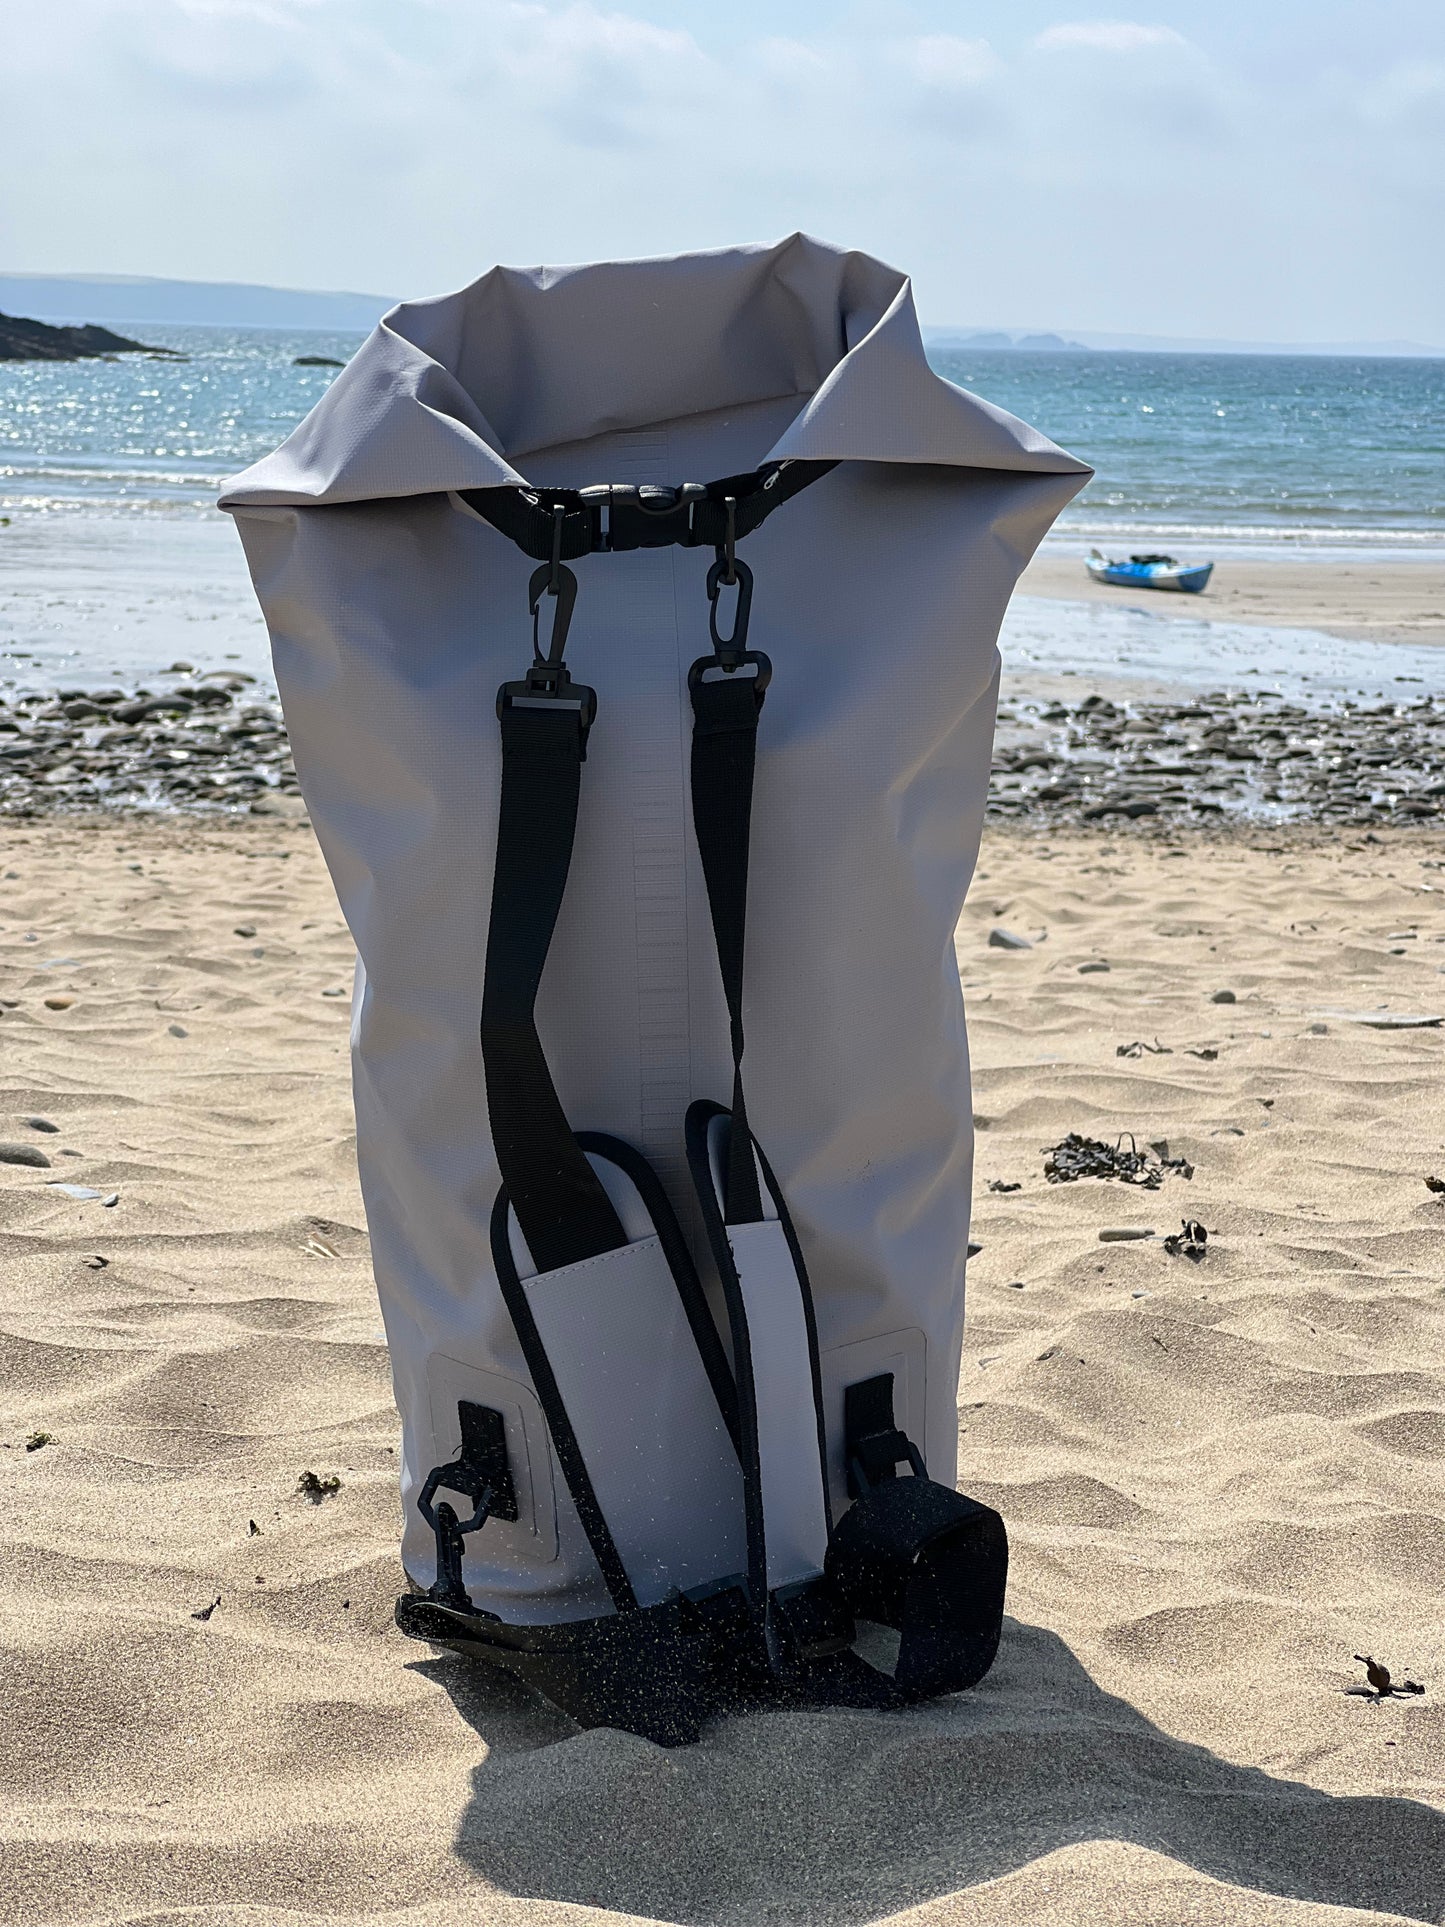 GF wave 30 Litre Dry waterproof bag / Ruck Sake Options Black or Grey